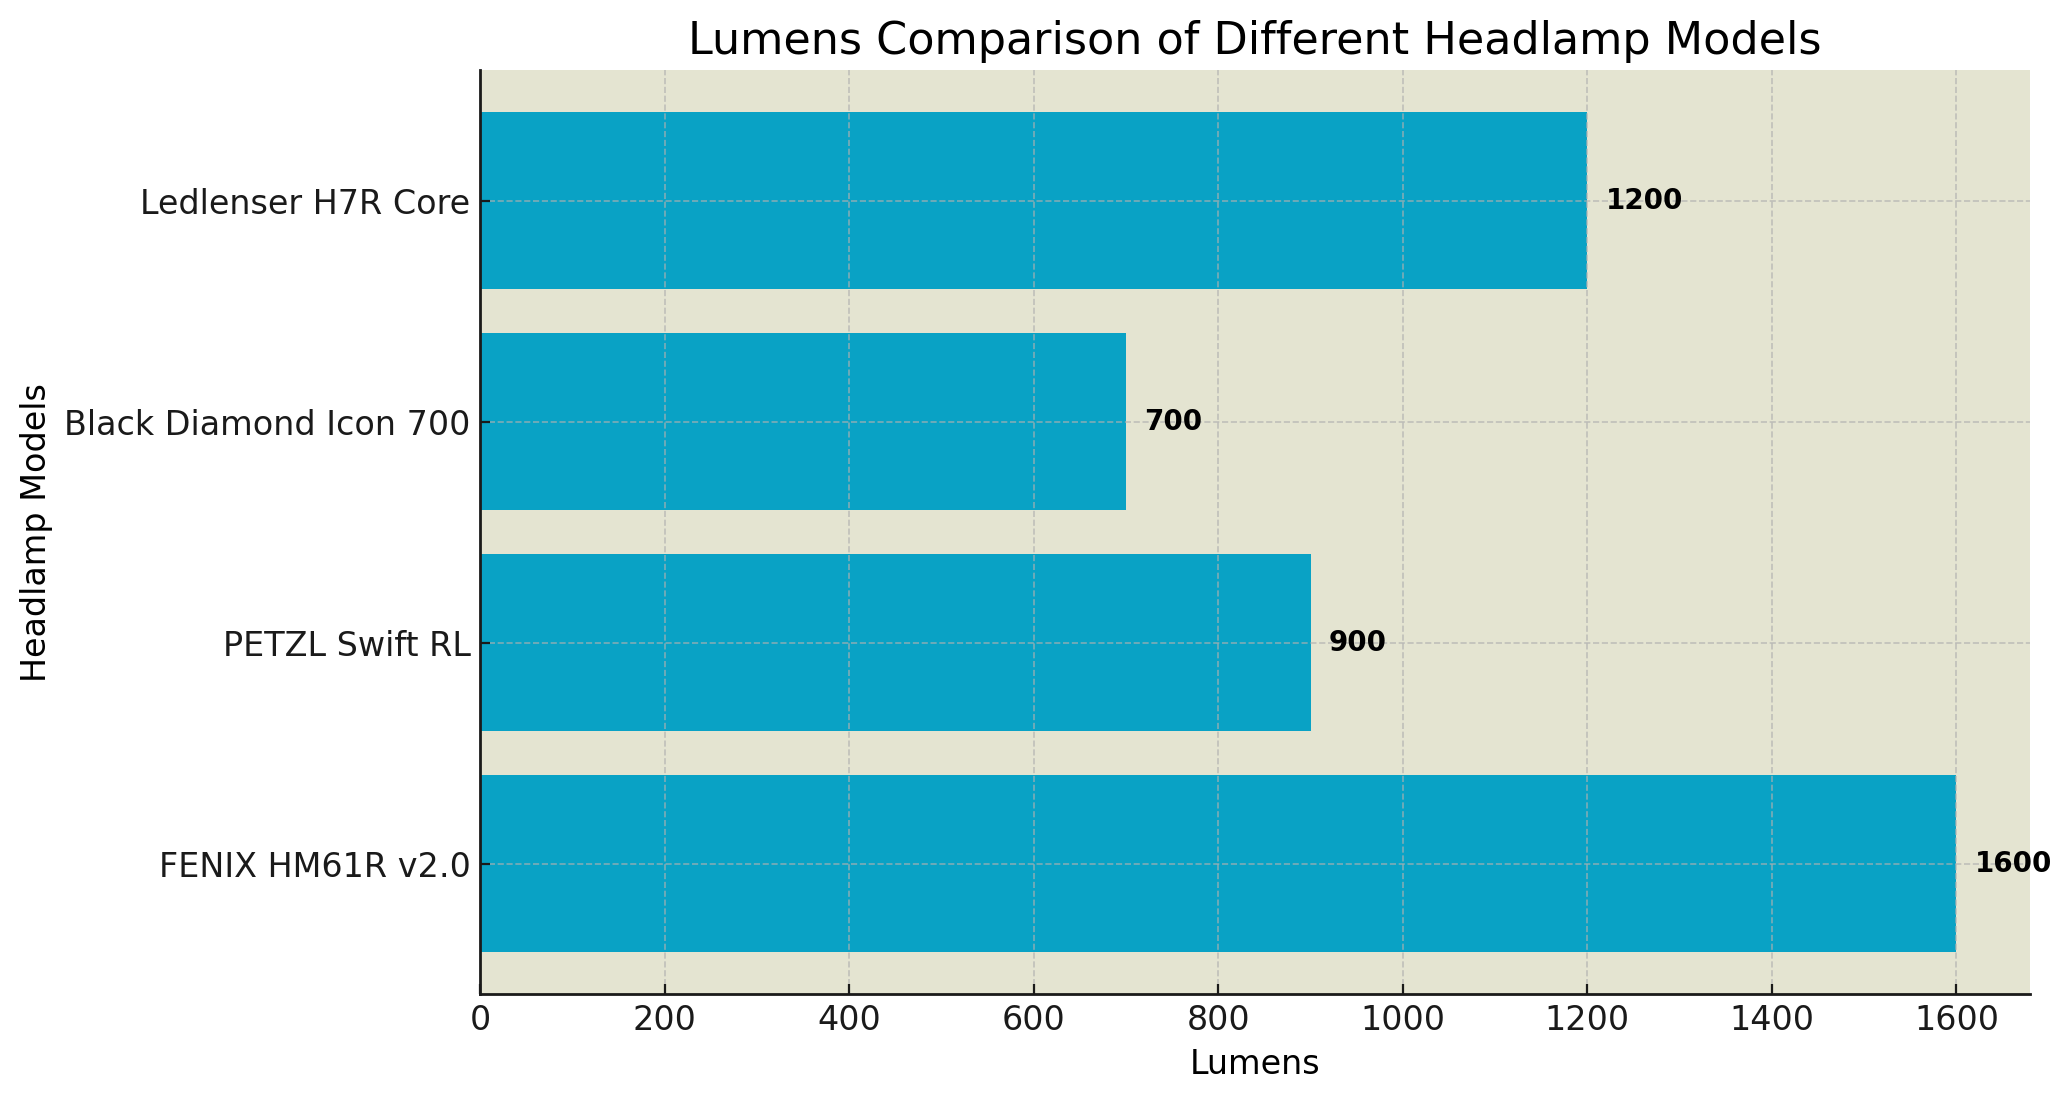 fenix hm61r v2 0 stirnlampe lichtstaerke vergleich mit anderen stirnlampen en